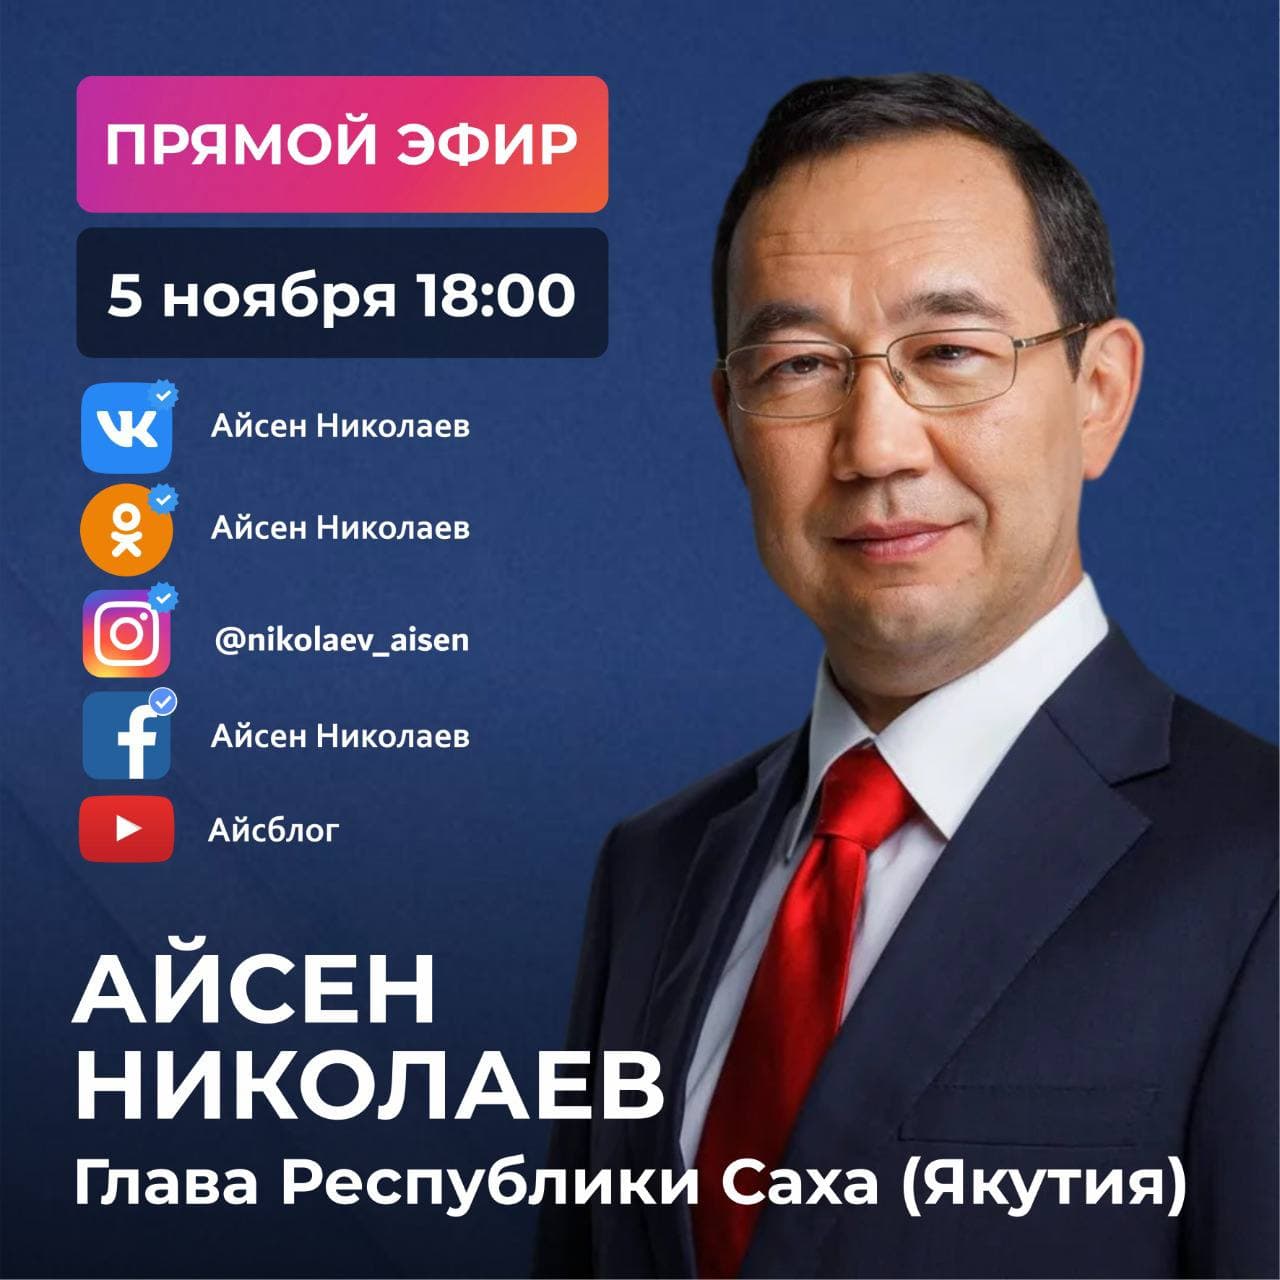 Айсен Николаев проведет прямой эфир в соцсетях 5 ноября